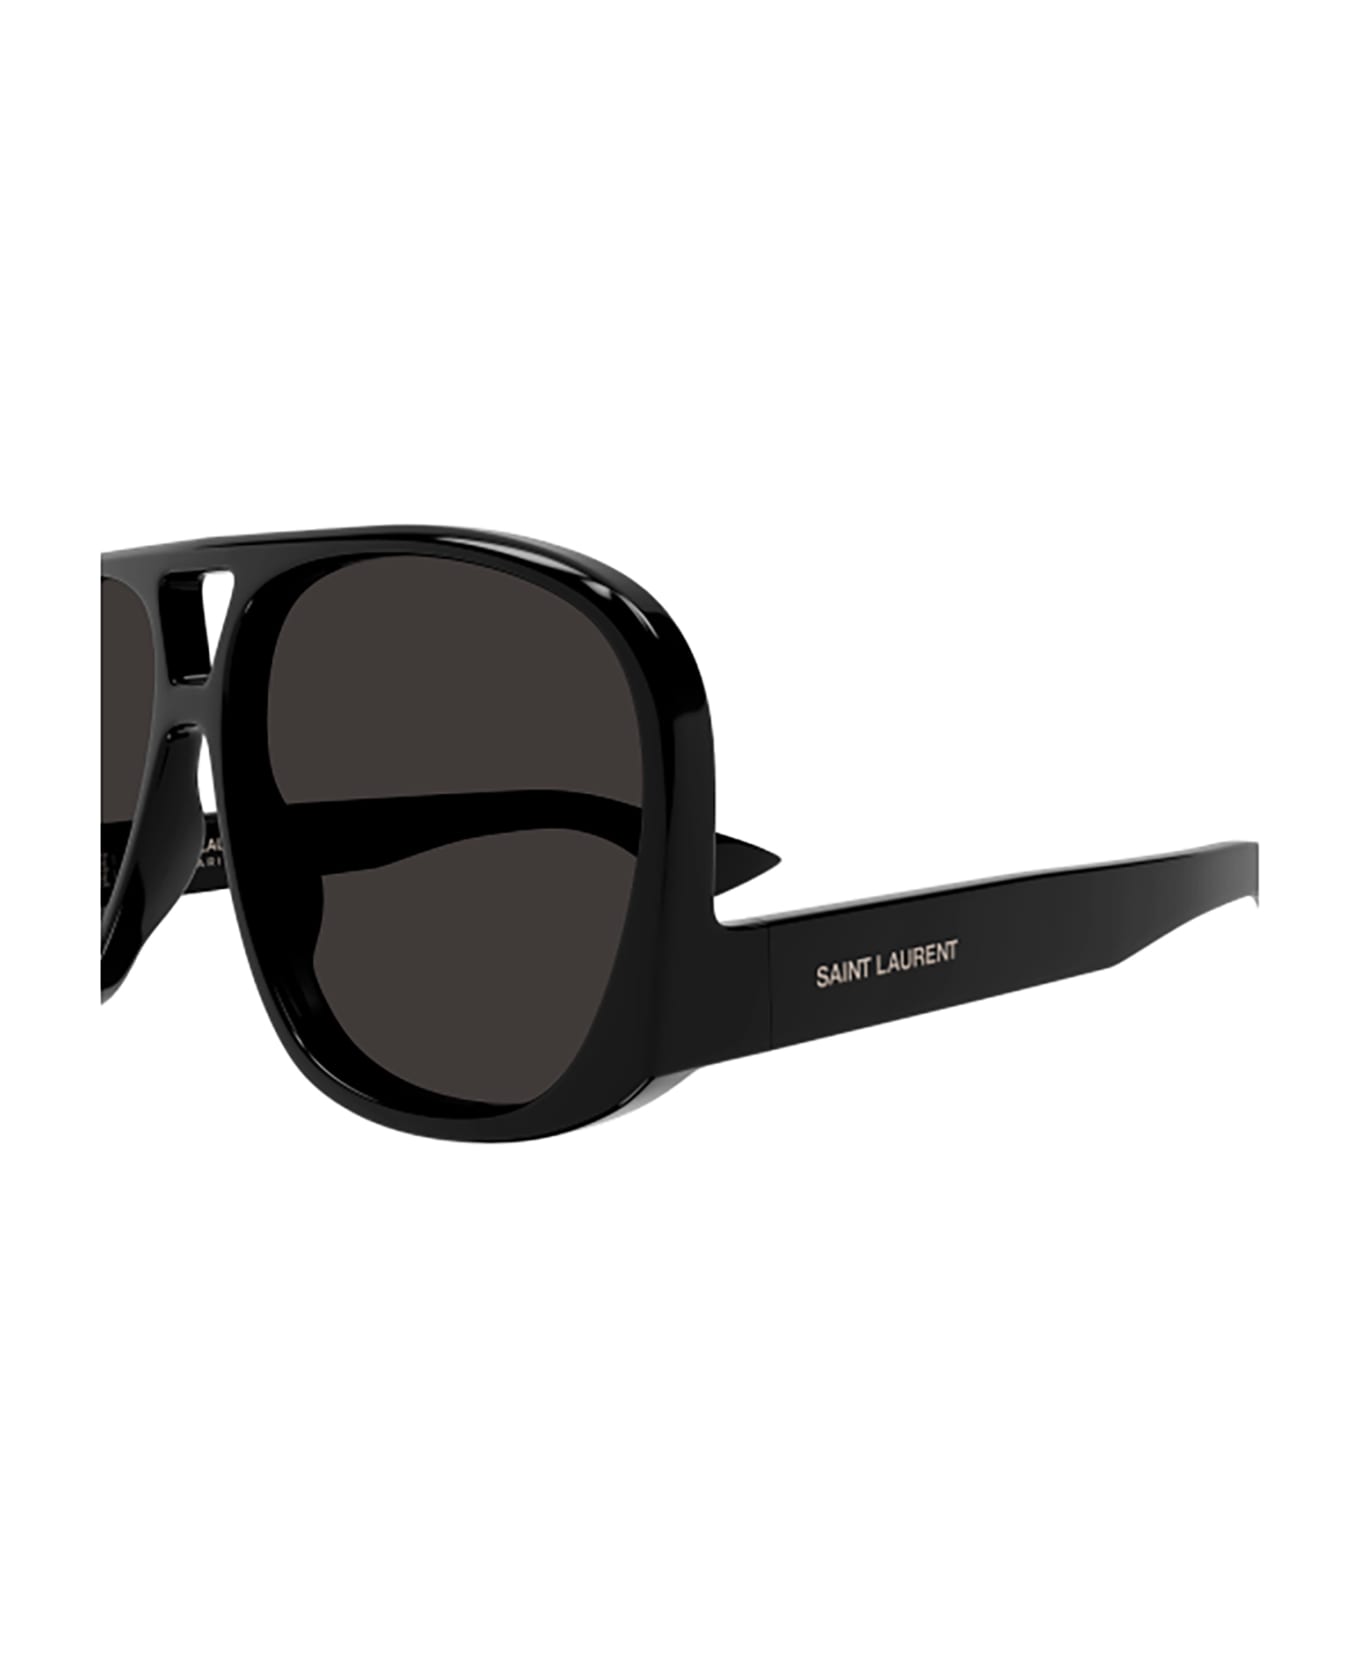 Saint Laurent Eyewear SL 652 SOLACE Sunglasses - Black Black Black サングラス